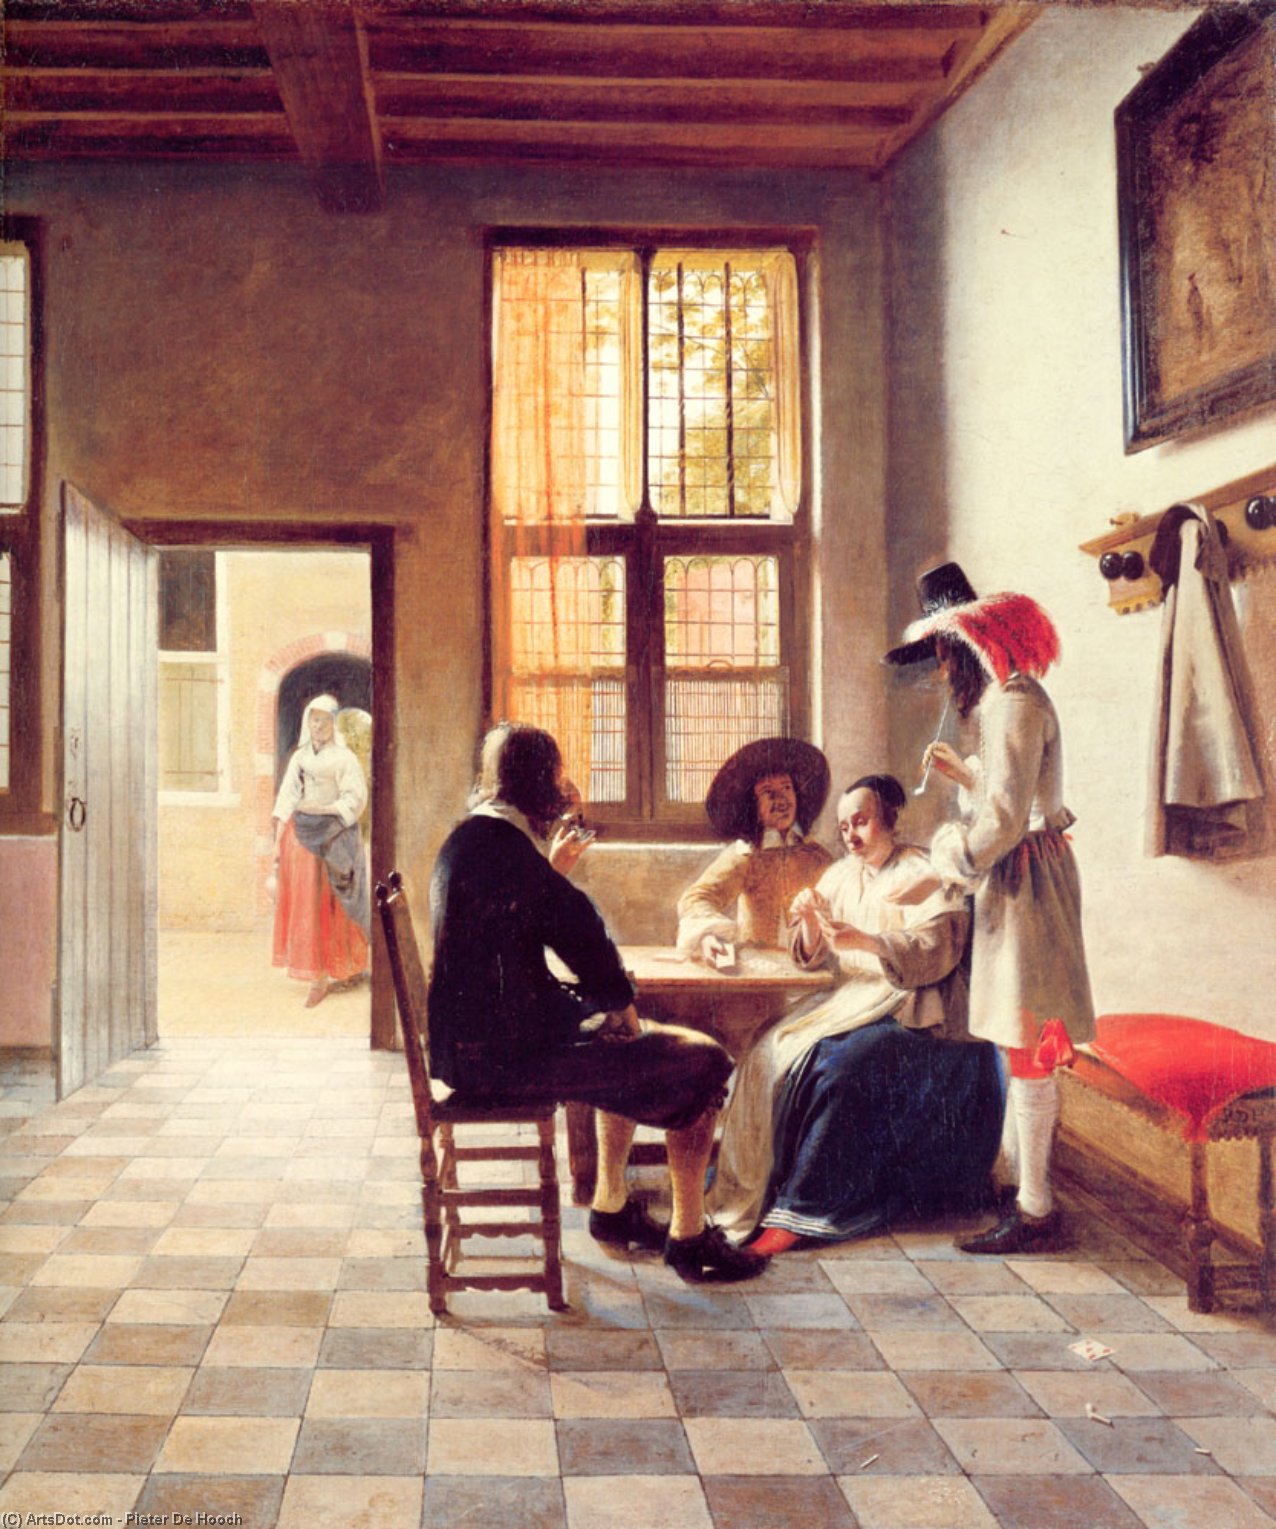 WikiOO.org - Encyclopedia of Fine Arts - Lukisan, Artwork Pieter De Hooch - Cardplayers in a Sunlit Room